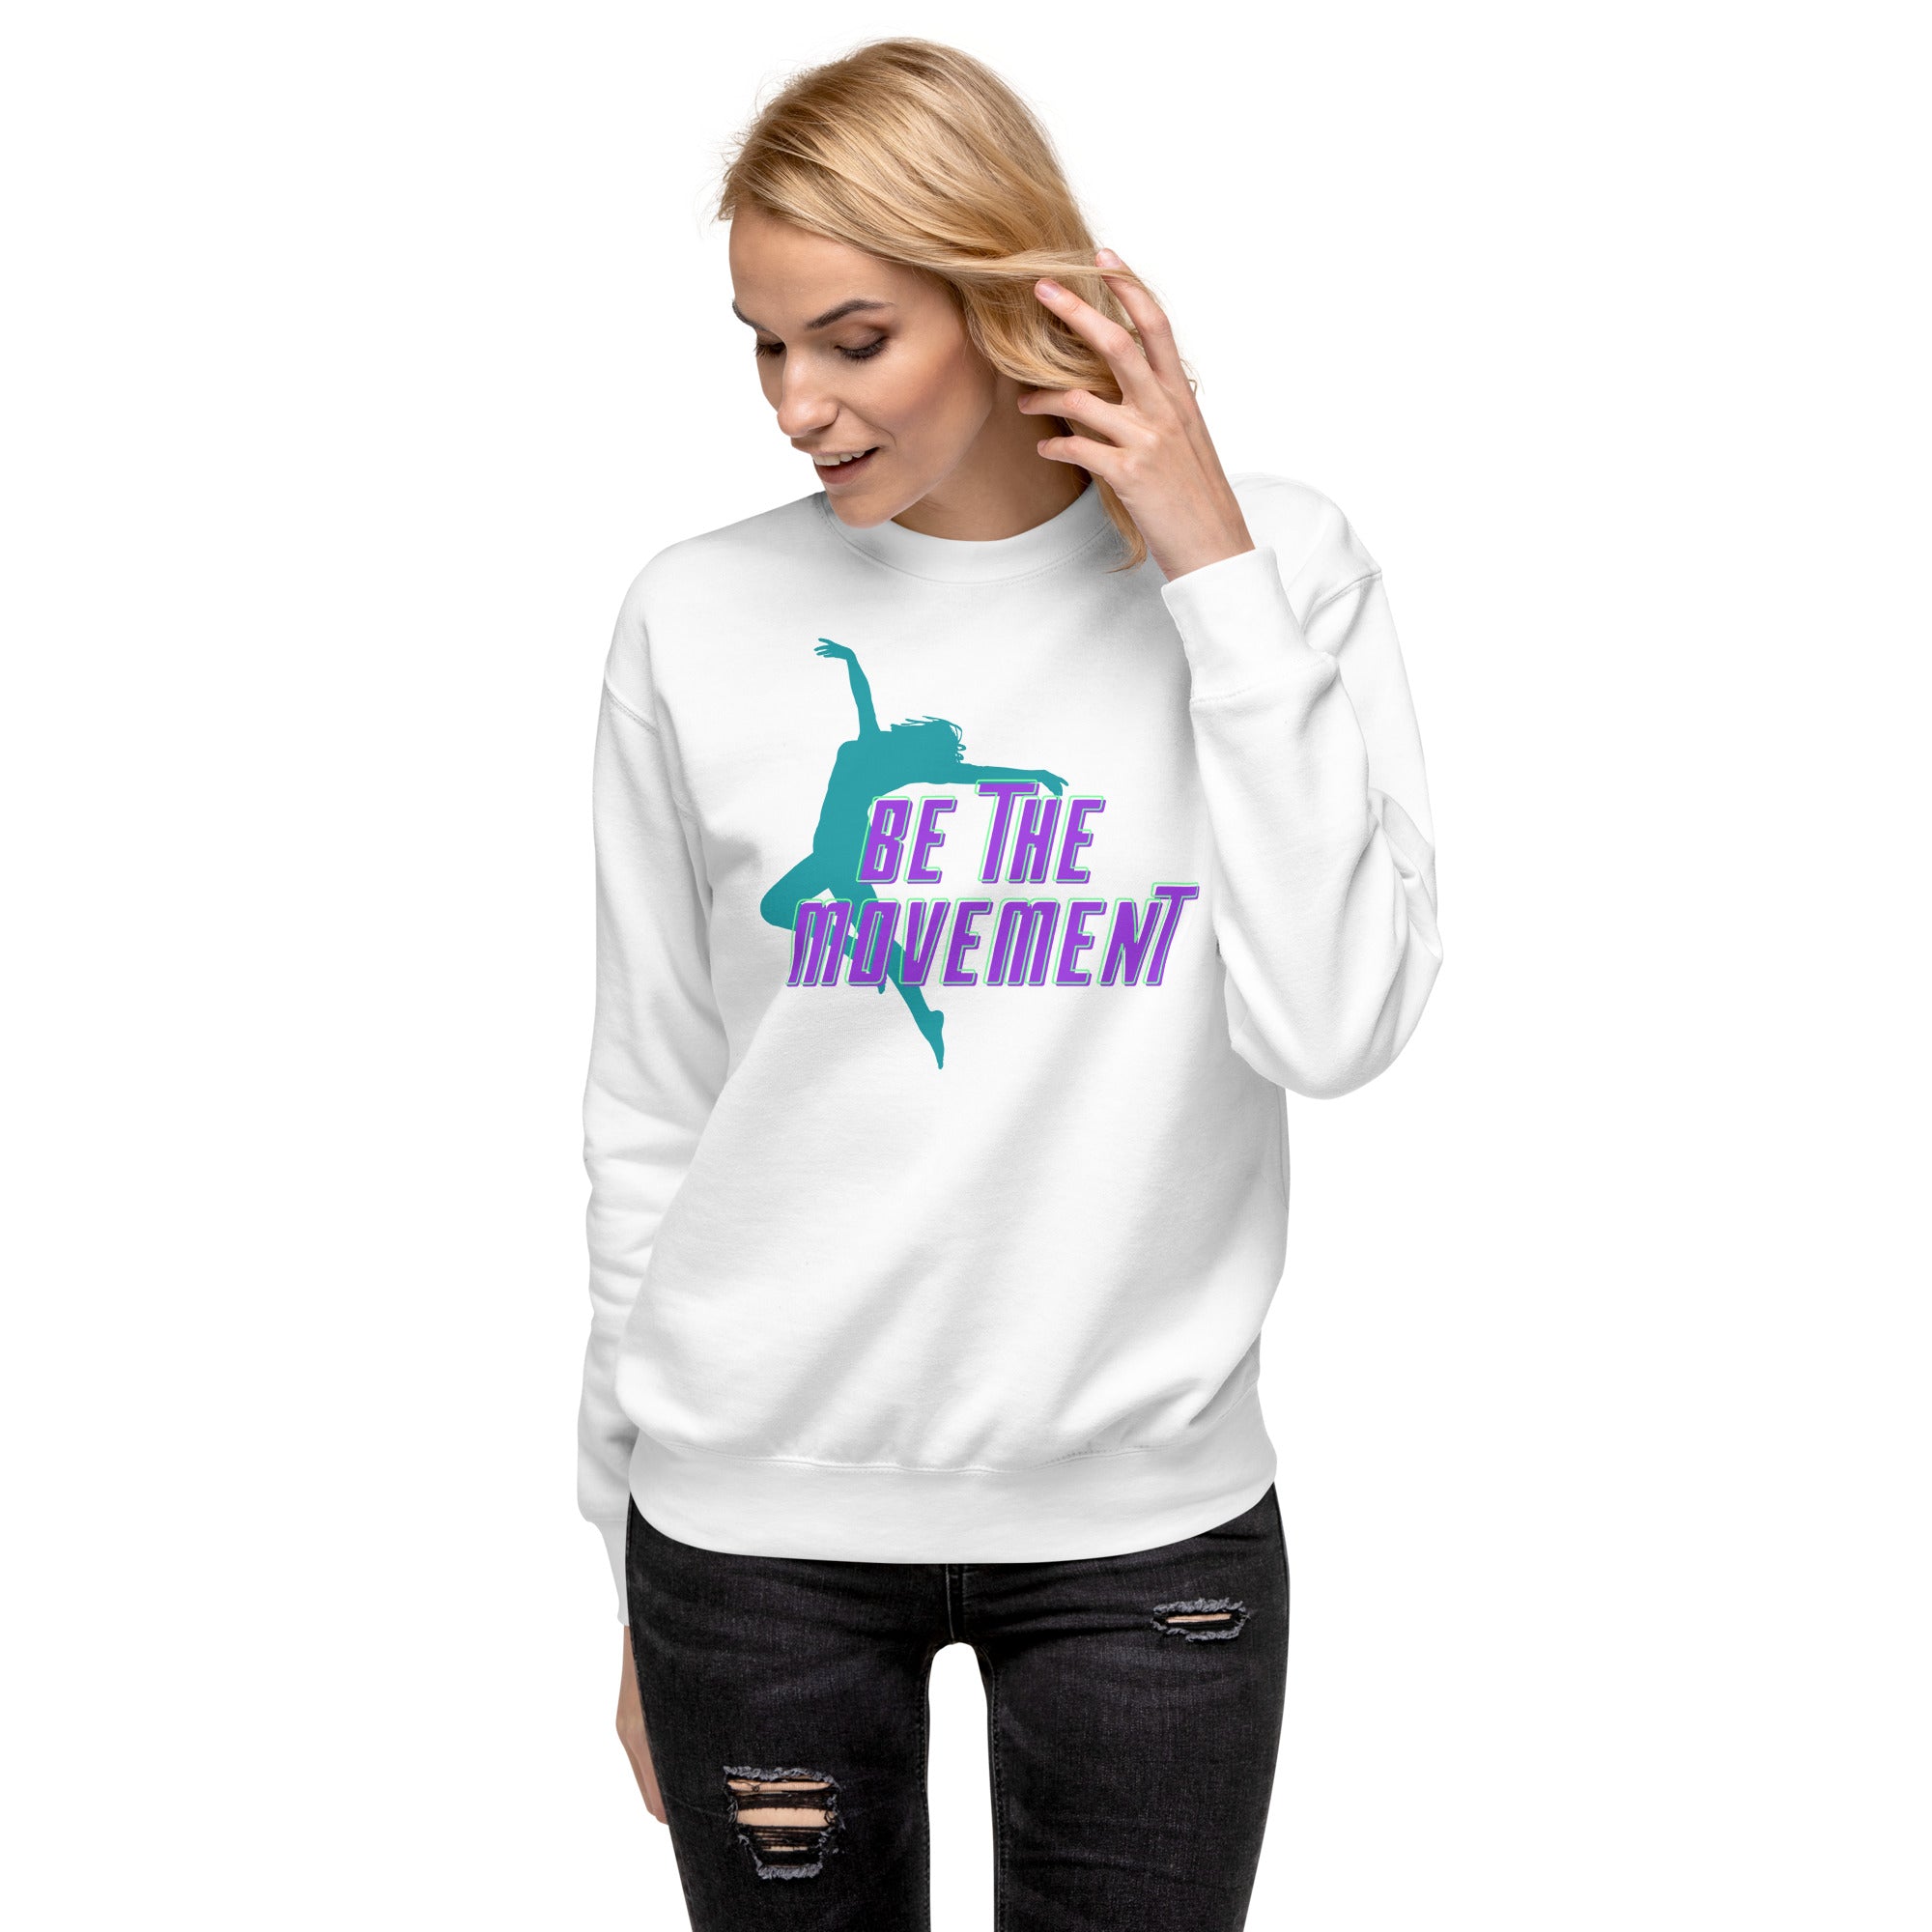 Be The Movement Women's Premium Sweatshirt